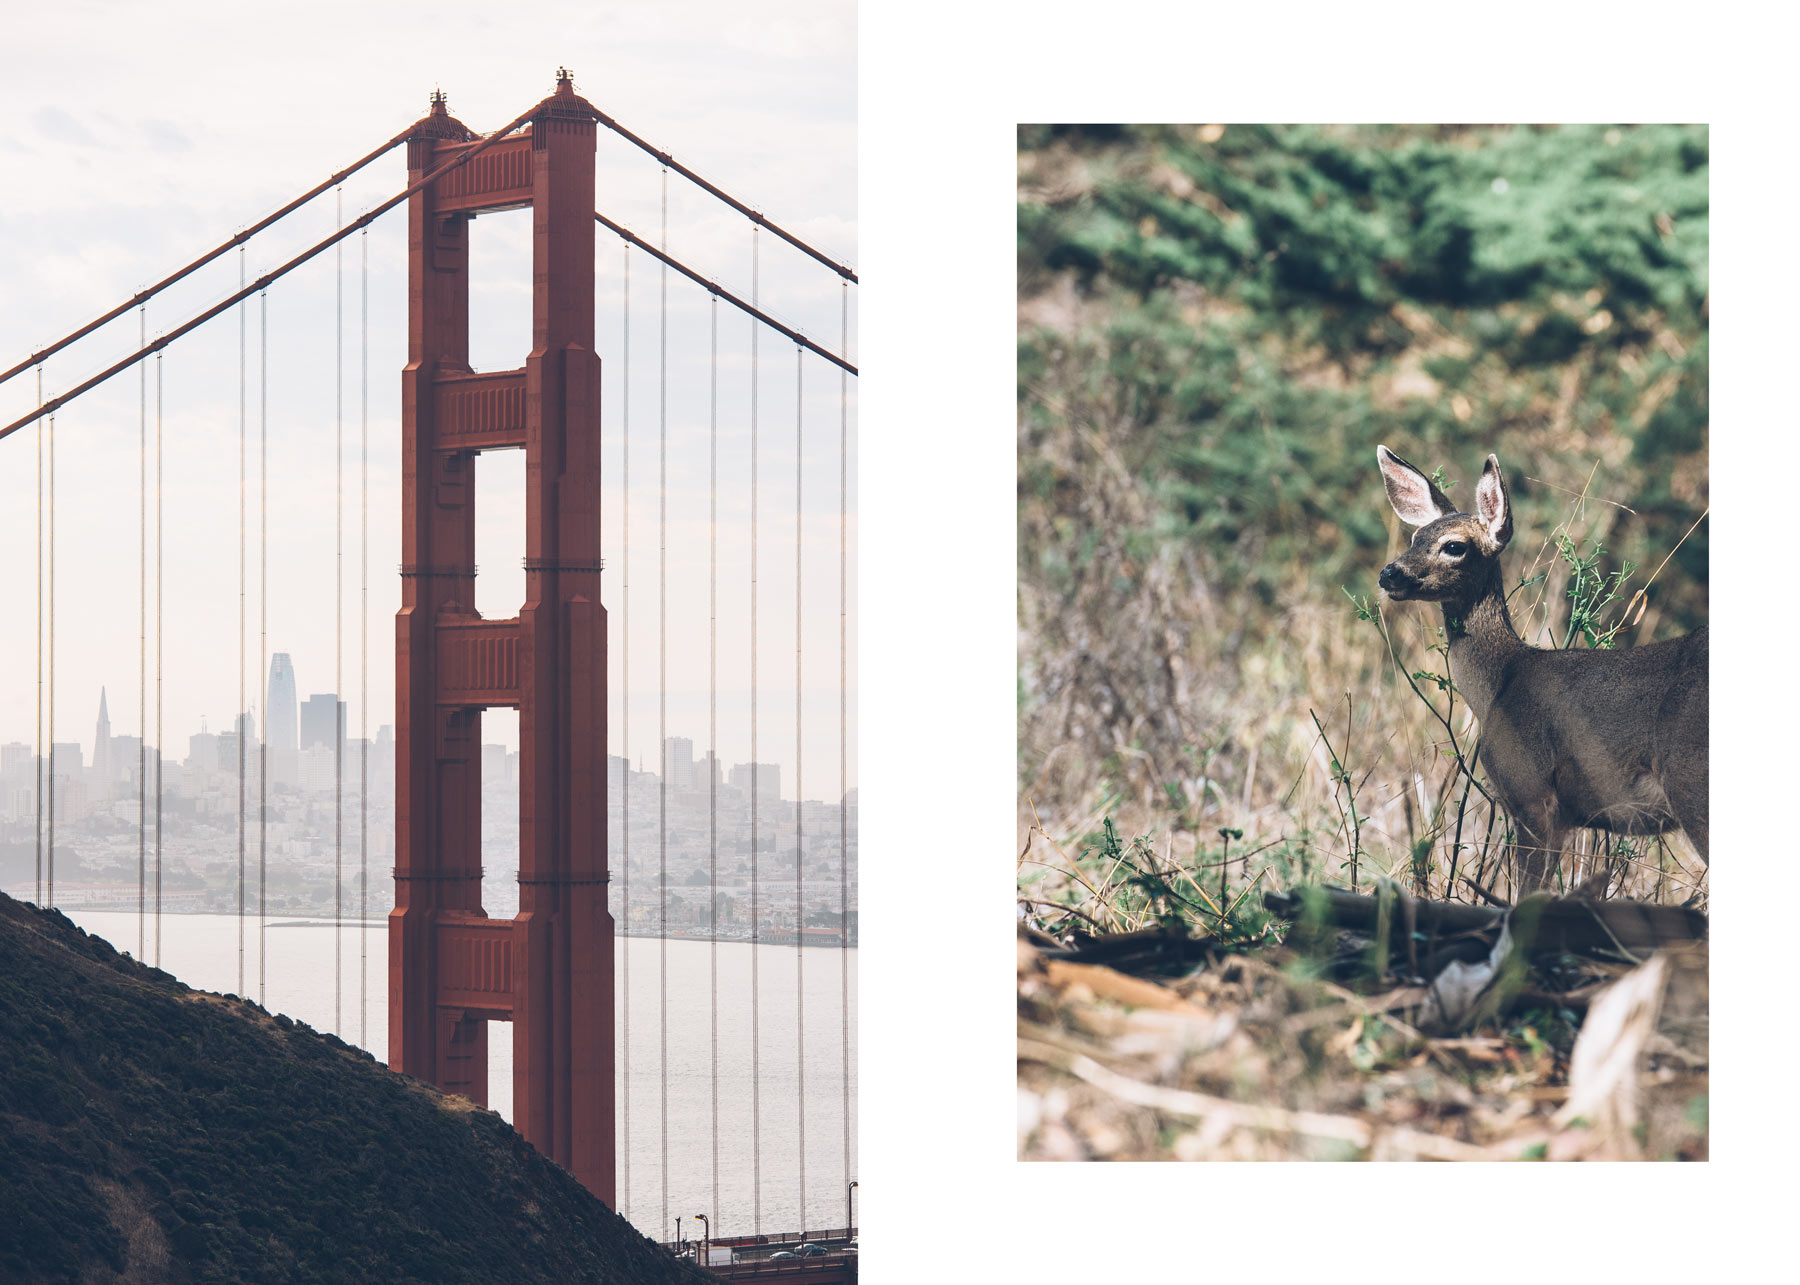 Voir des biches à San Francisco près du Golden Gate! 